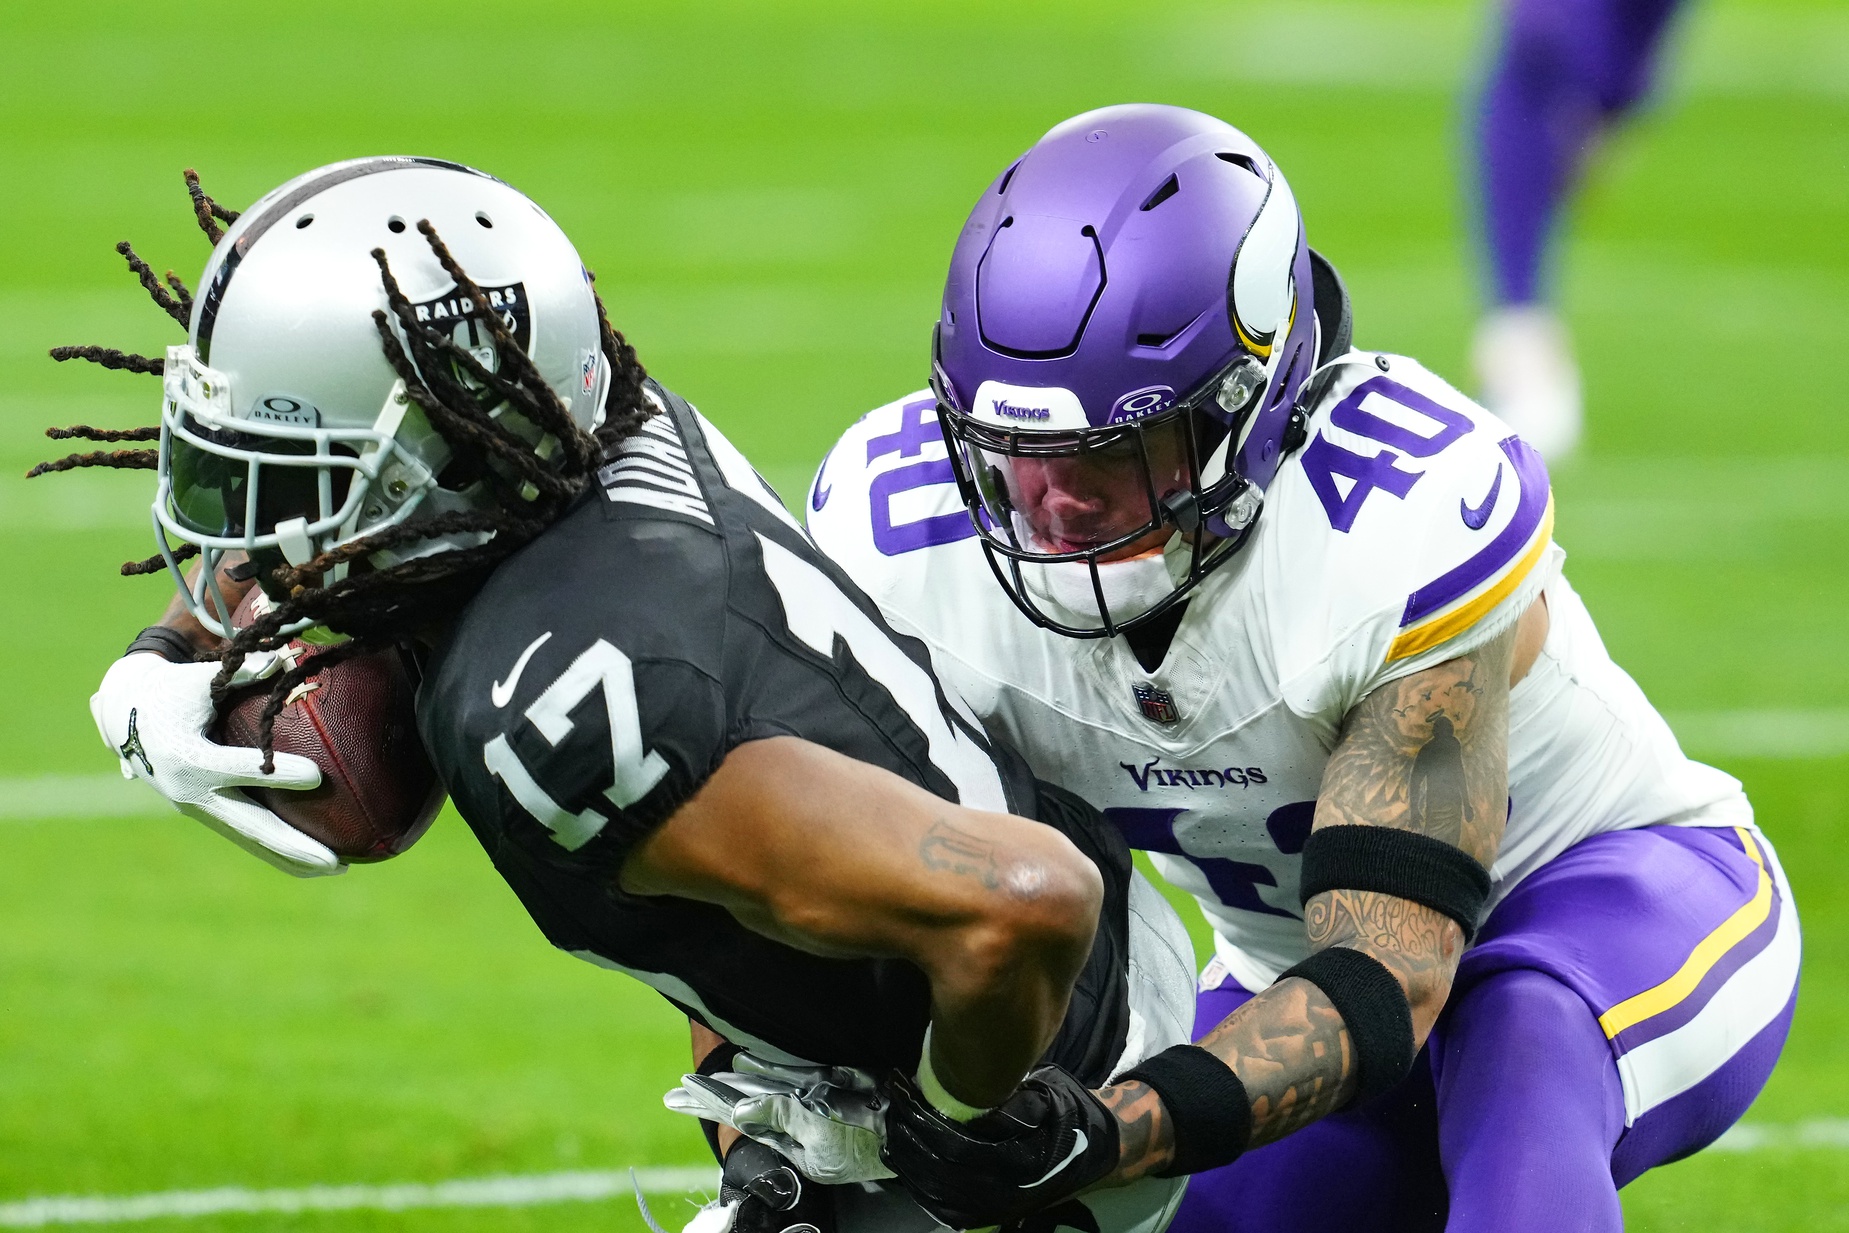 Vikings rookie Ivan Pace Jr. returns home to Cincinnati as NFL success